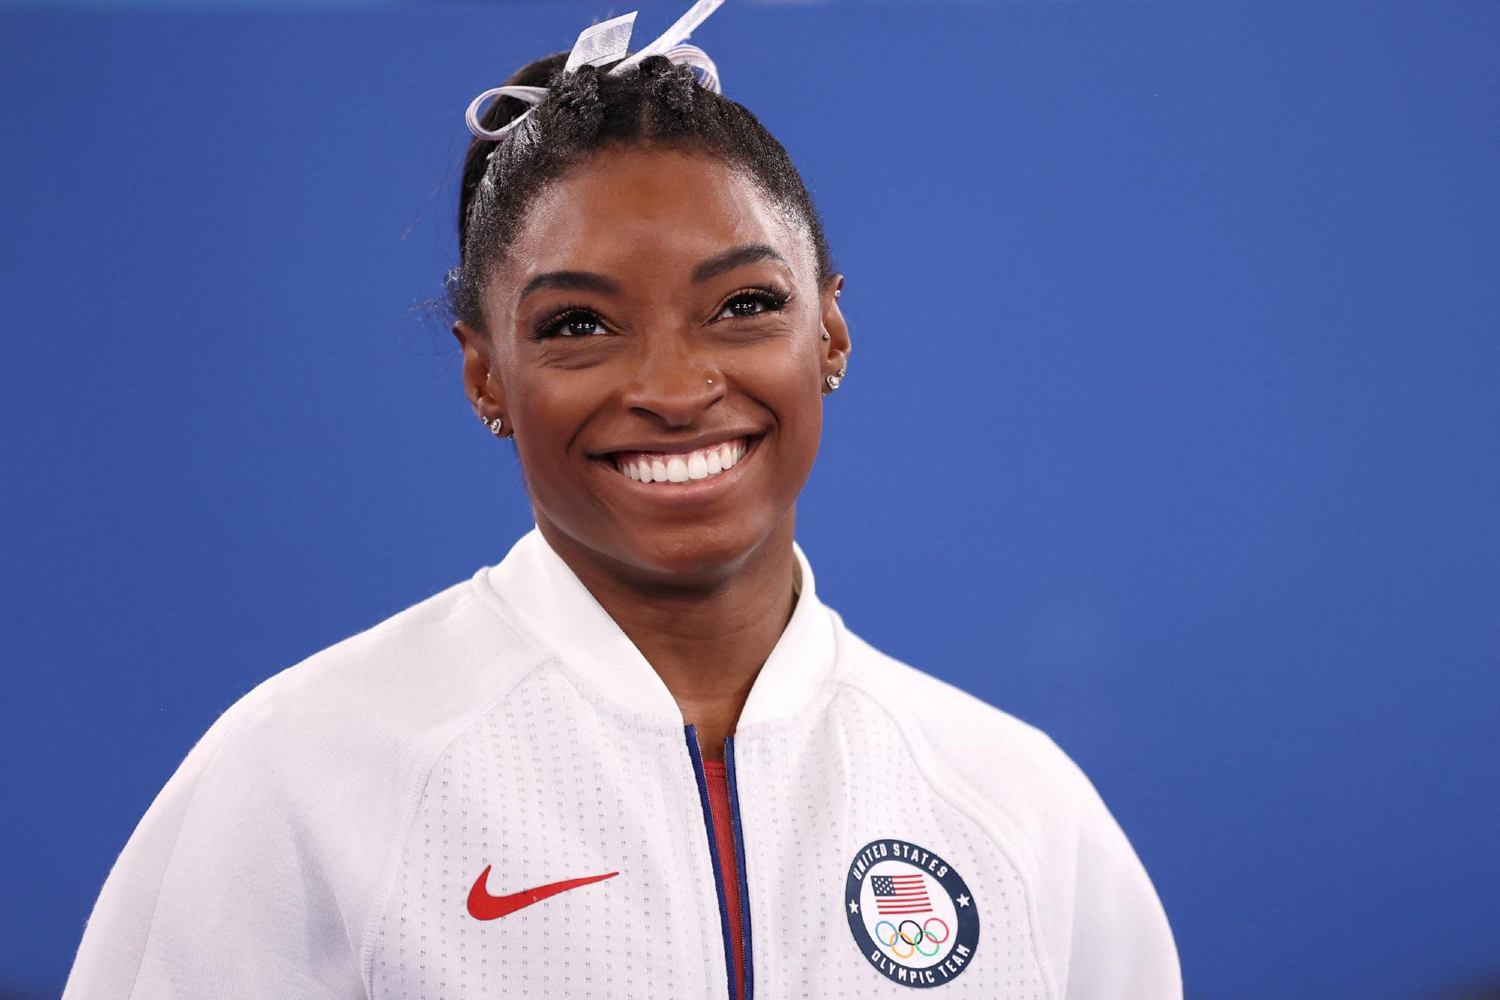 Serena Williams lança produtos para aliviar dor de atletas - Forbes